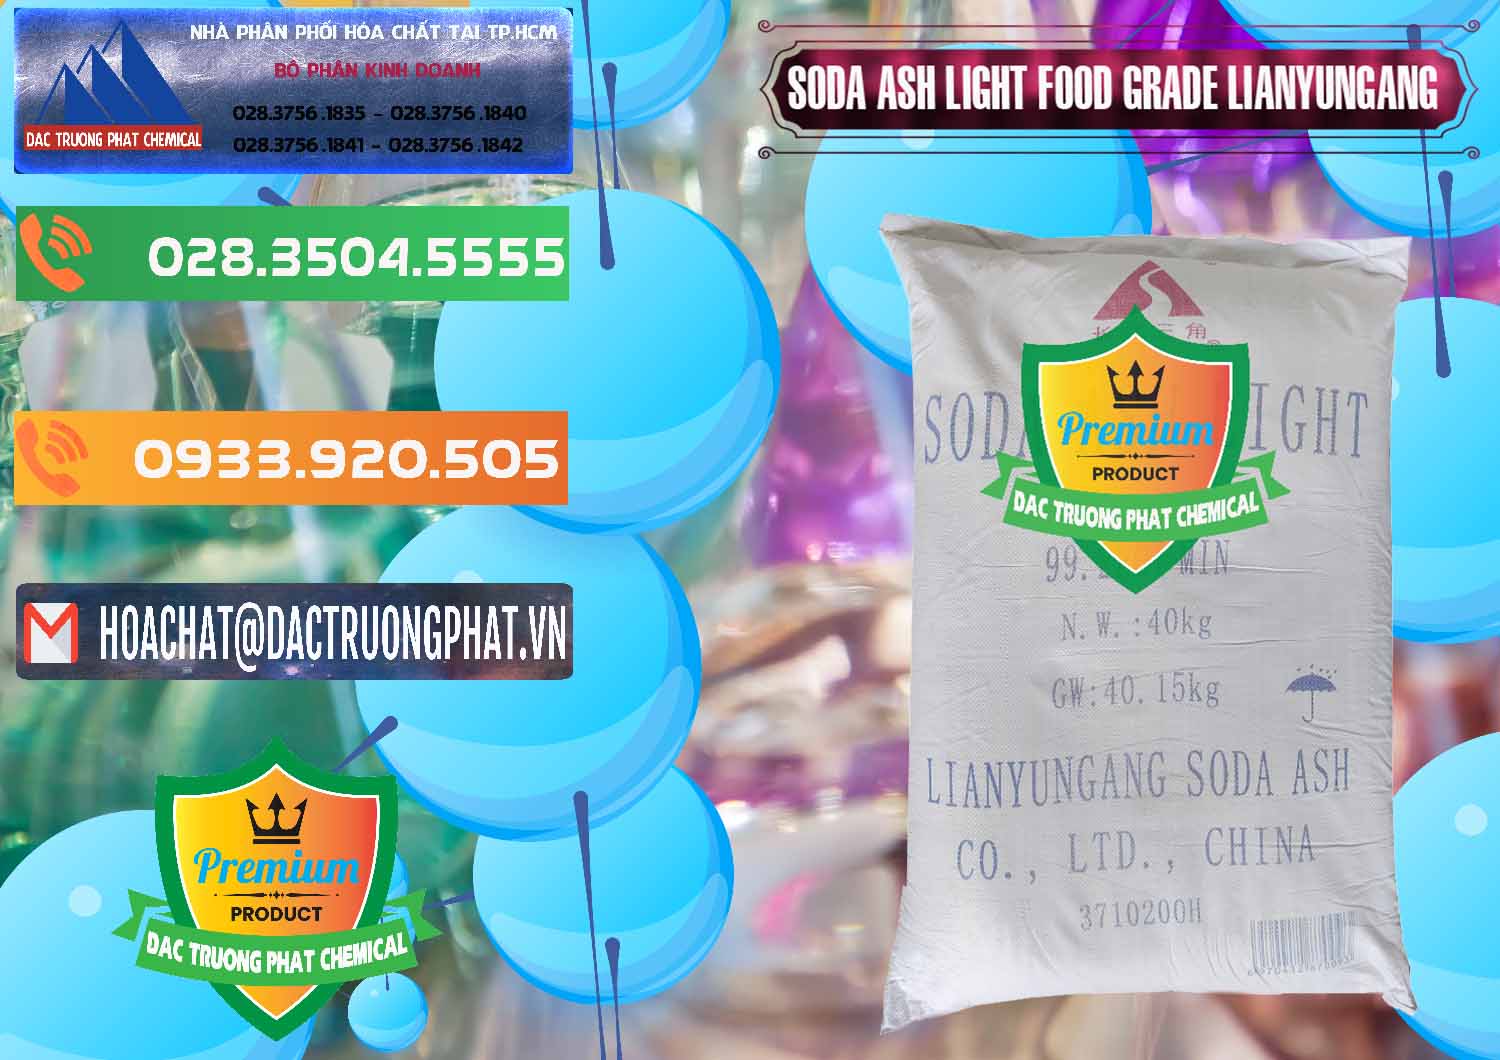 Cty chuyên cung cấp & bán Soda Ash Light - NA2CO3 Food Grade Lianyungang Trung Quốc - 0222 - Công ty phân phối ( bán ) hóa chất tại TP.HCM - hoachatxulynuoc.com.vn